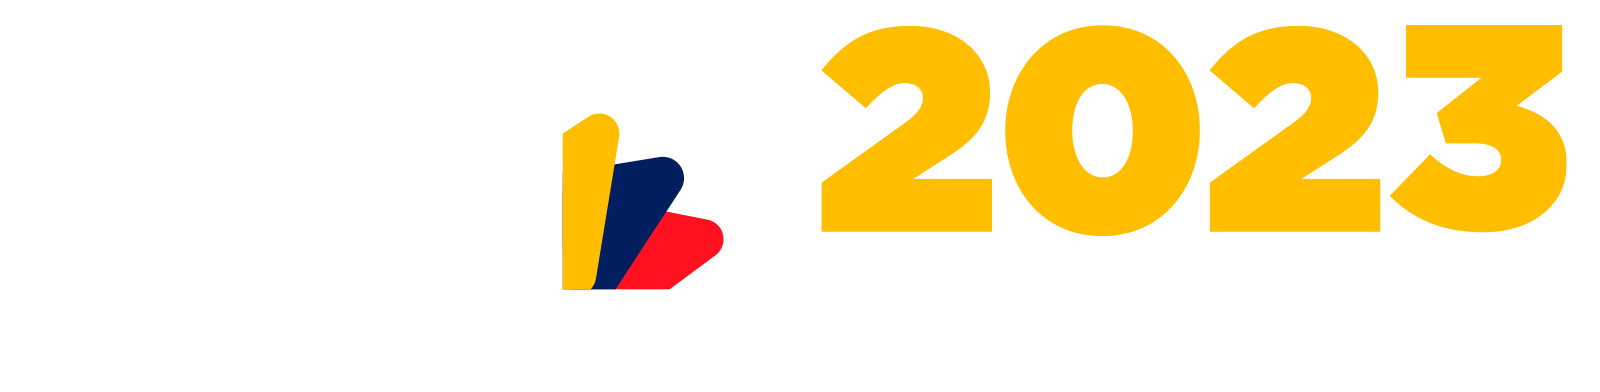 FORMULARIO DE REGISTRO DE EVENTO DEL DIA INTERNACIONAL DE REDUCCIÓN DE RIESGOS